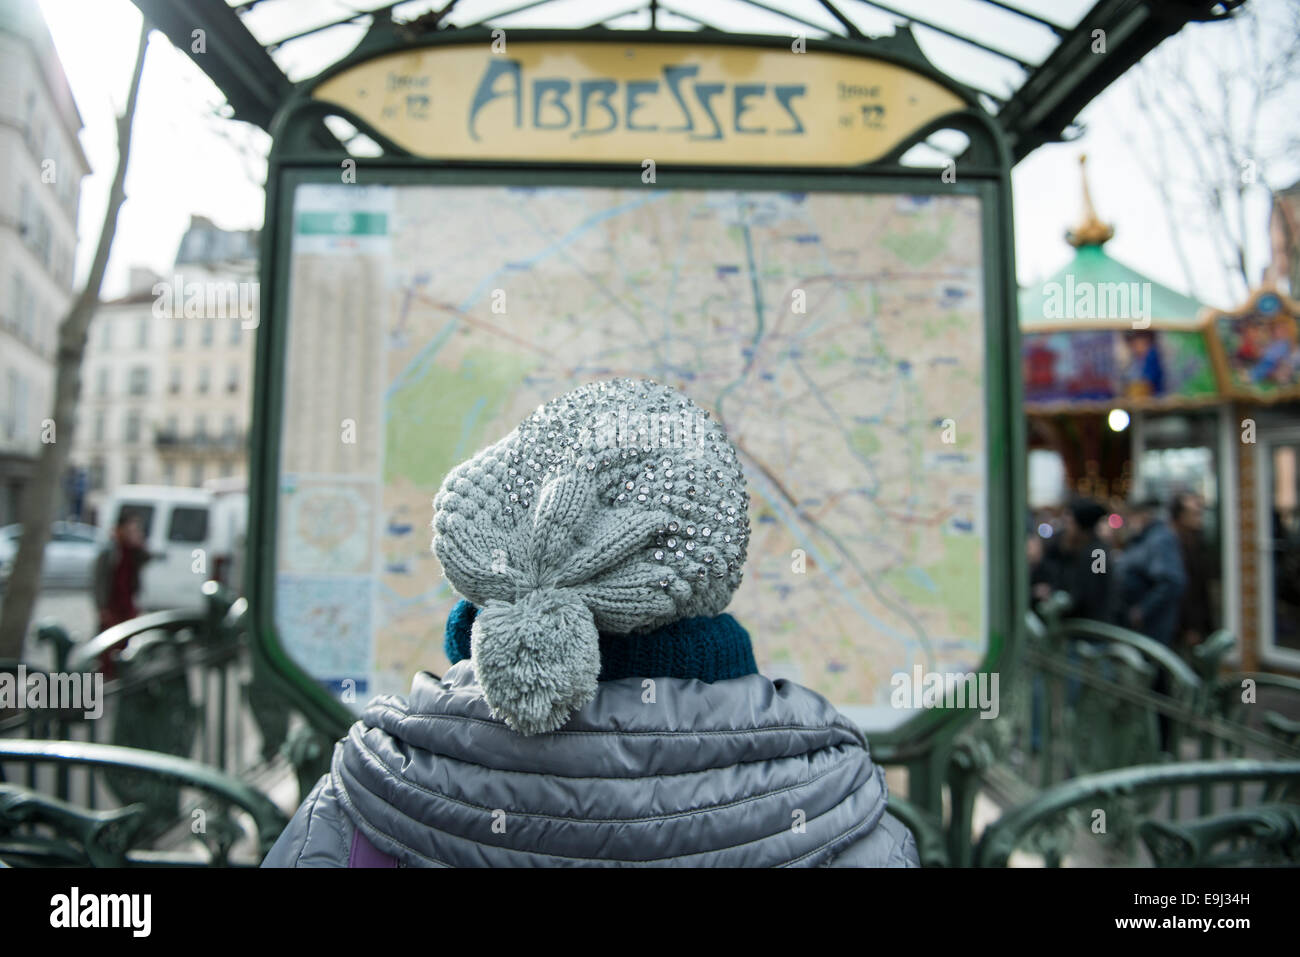 Une femme dans un lit la carte train hat en dehors d'une station de métro de Paris Banque D'Images